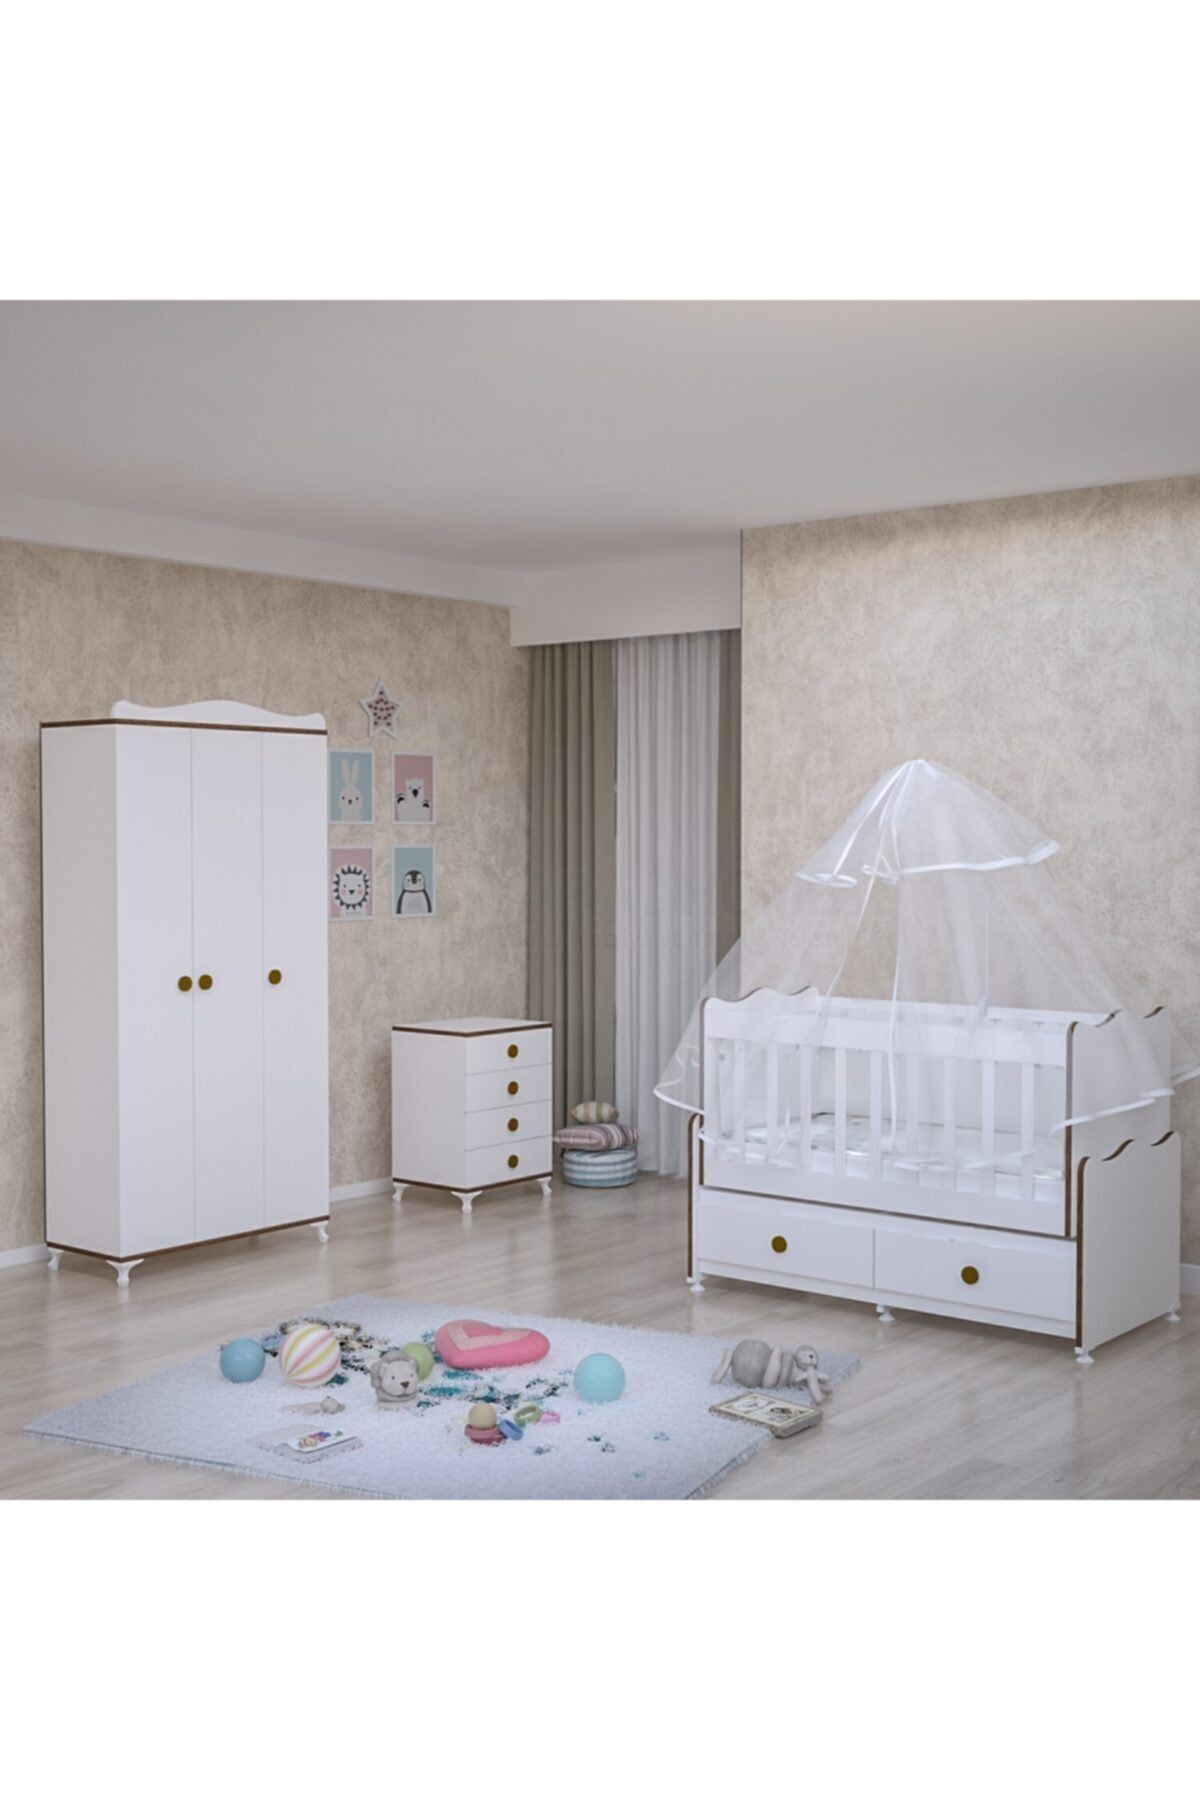 Garaj Home Elegant Yıldız 3 Kapaklı Bebek Odası Takımı - Yatak Ve Uyku Seti Kombinli-sümela- Uykuseti Beyaz